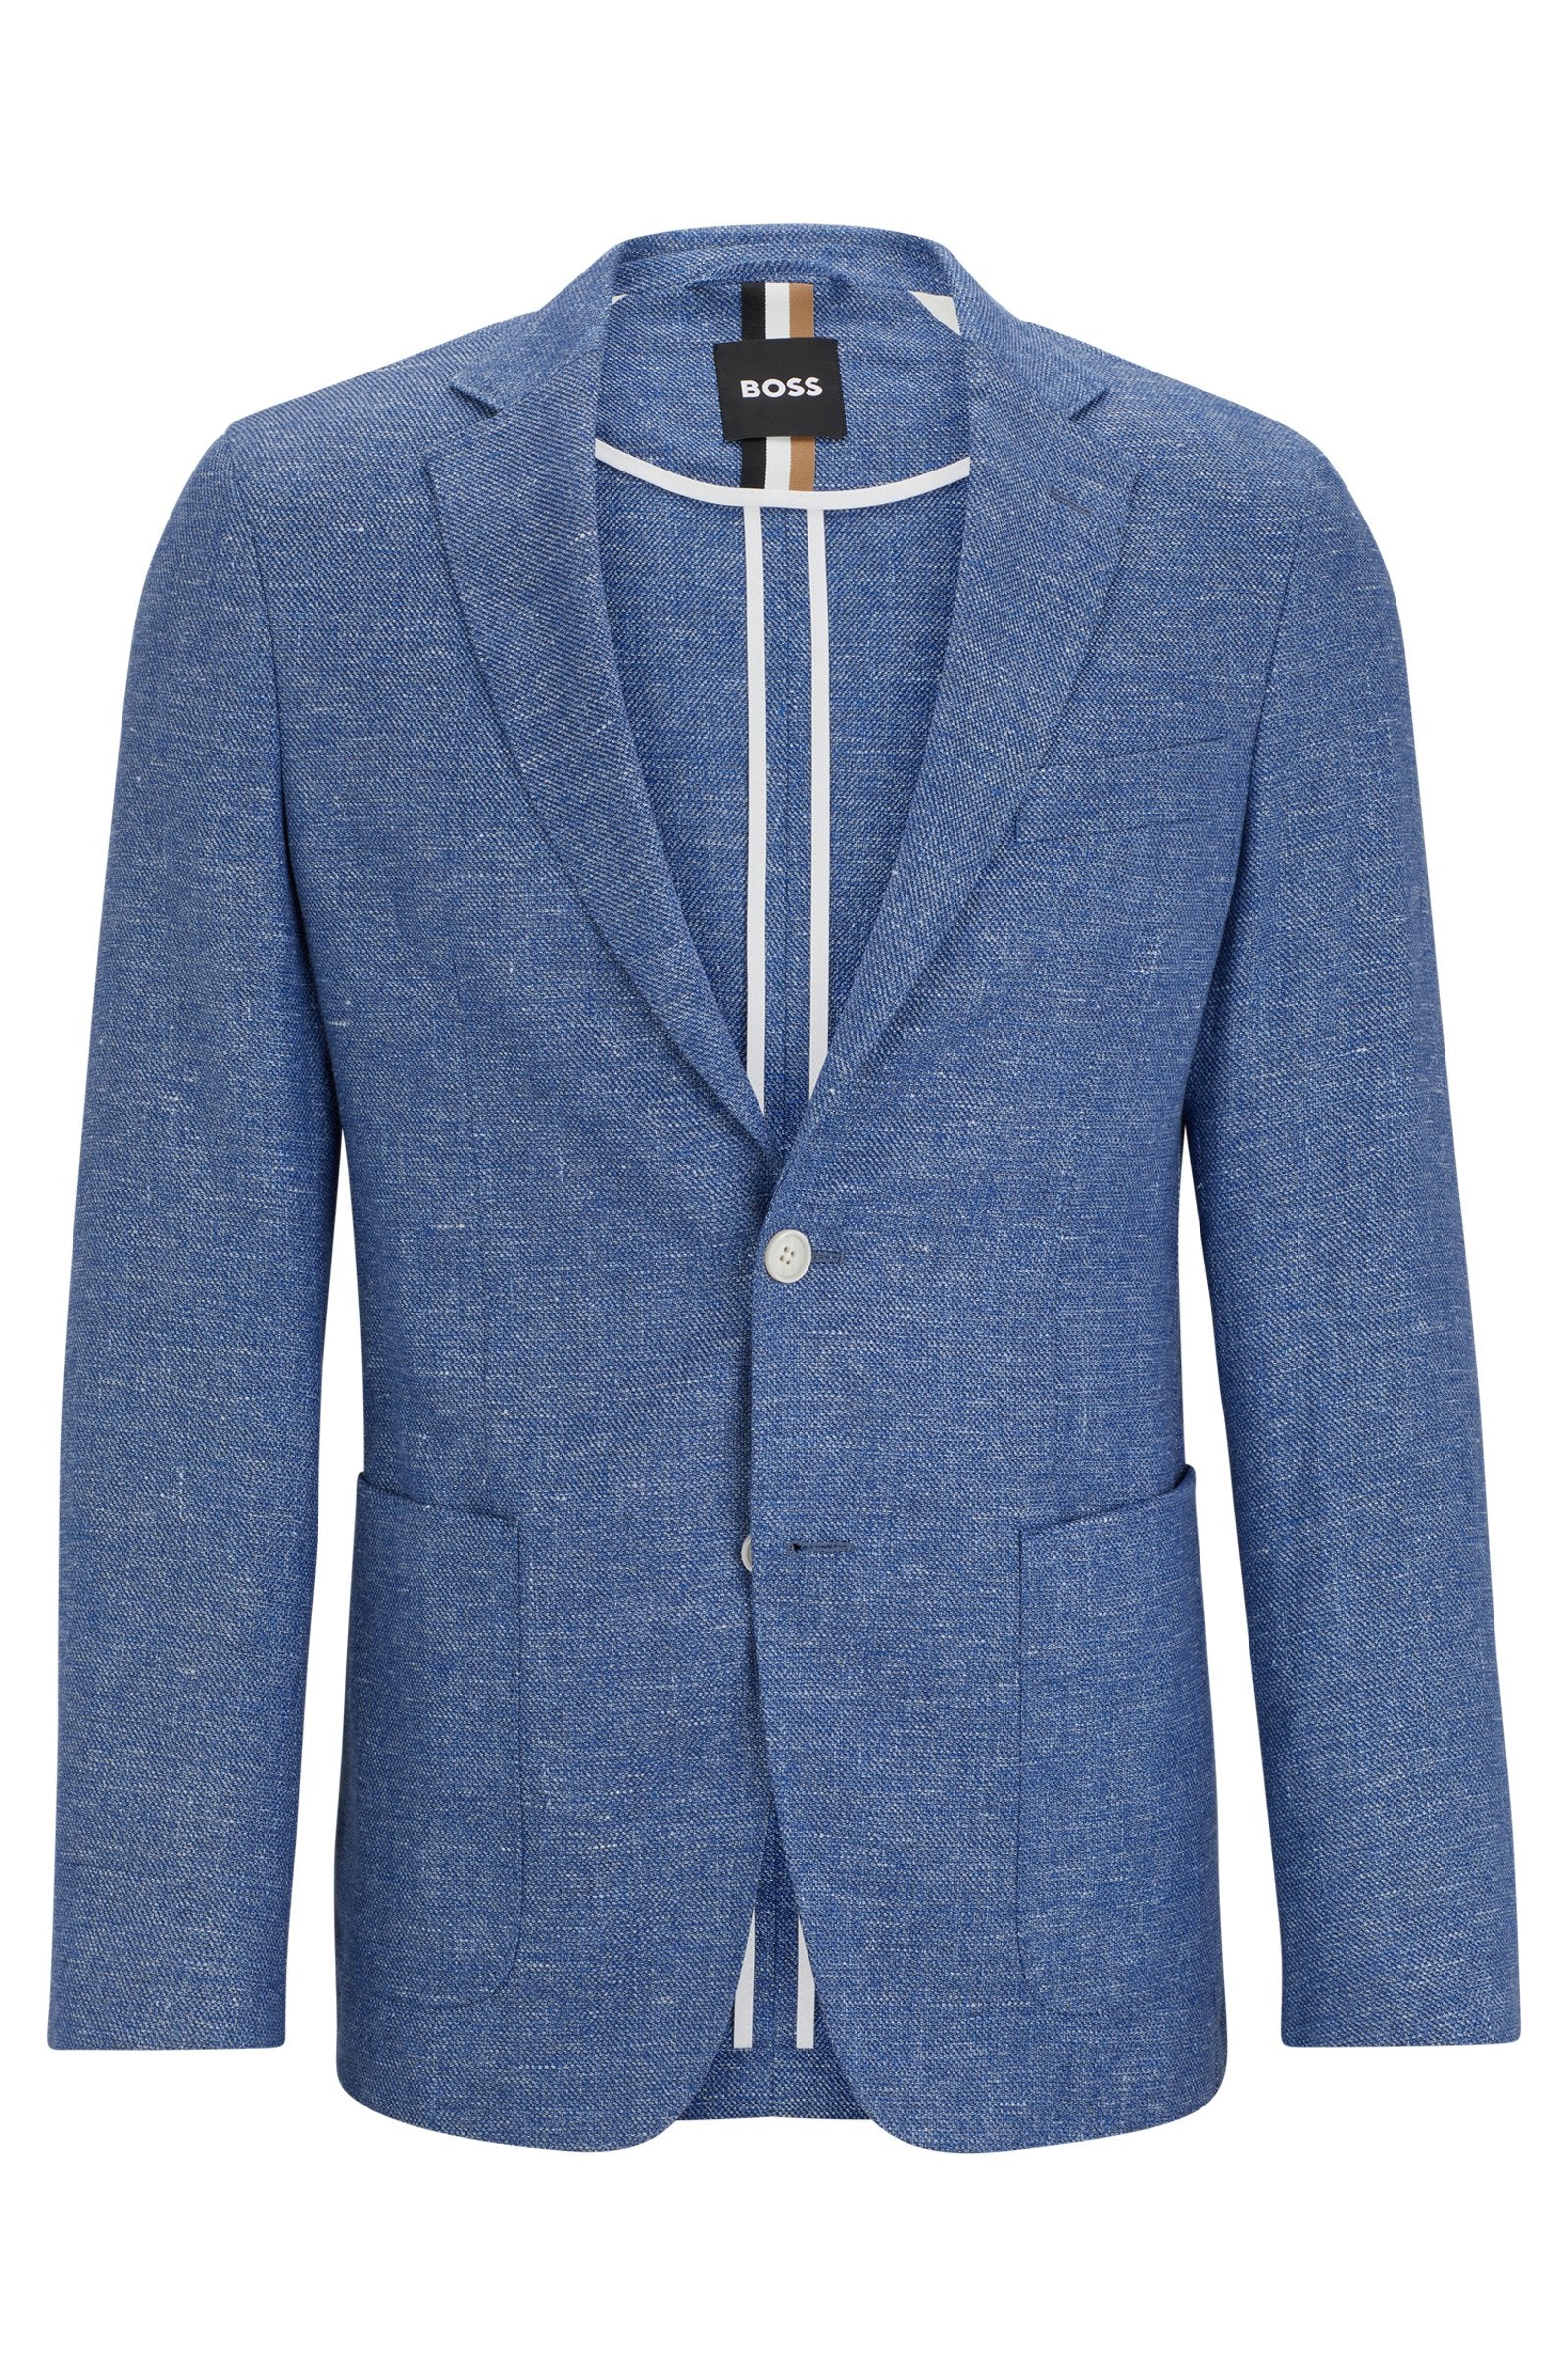 BOSS - C-HANRY-233 Medium Blue Slim Fit Jacket In Linen Blend 50514618 423